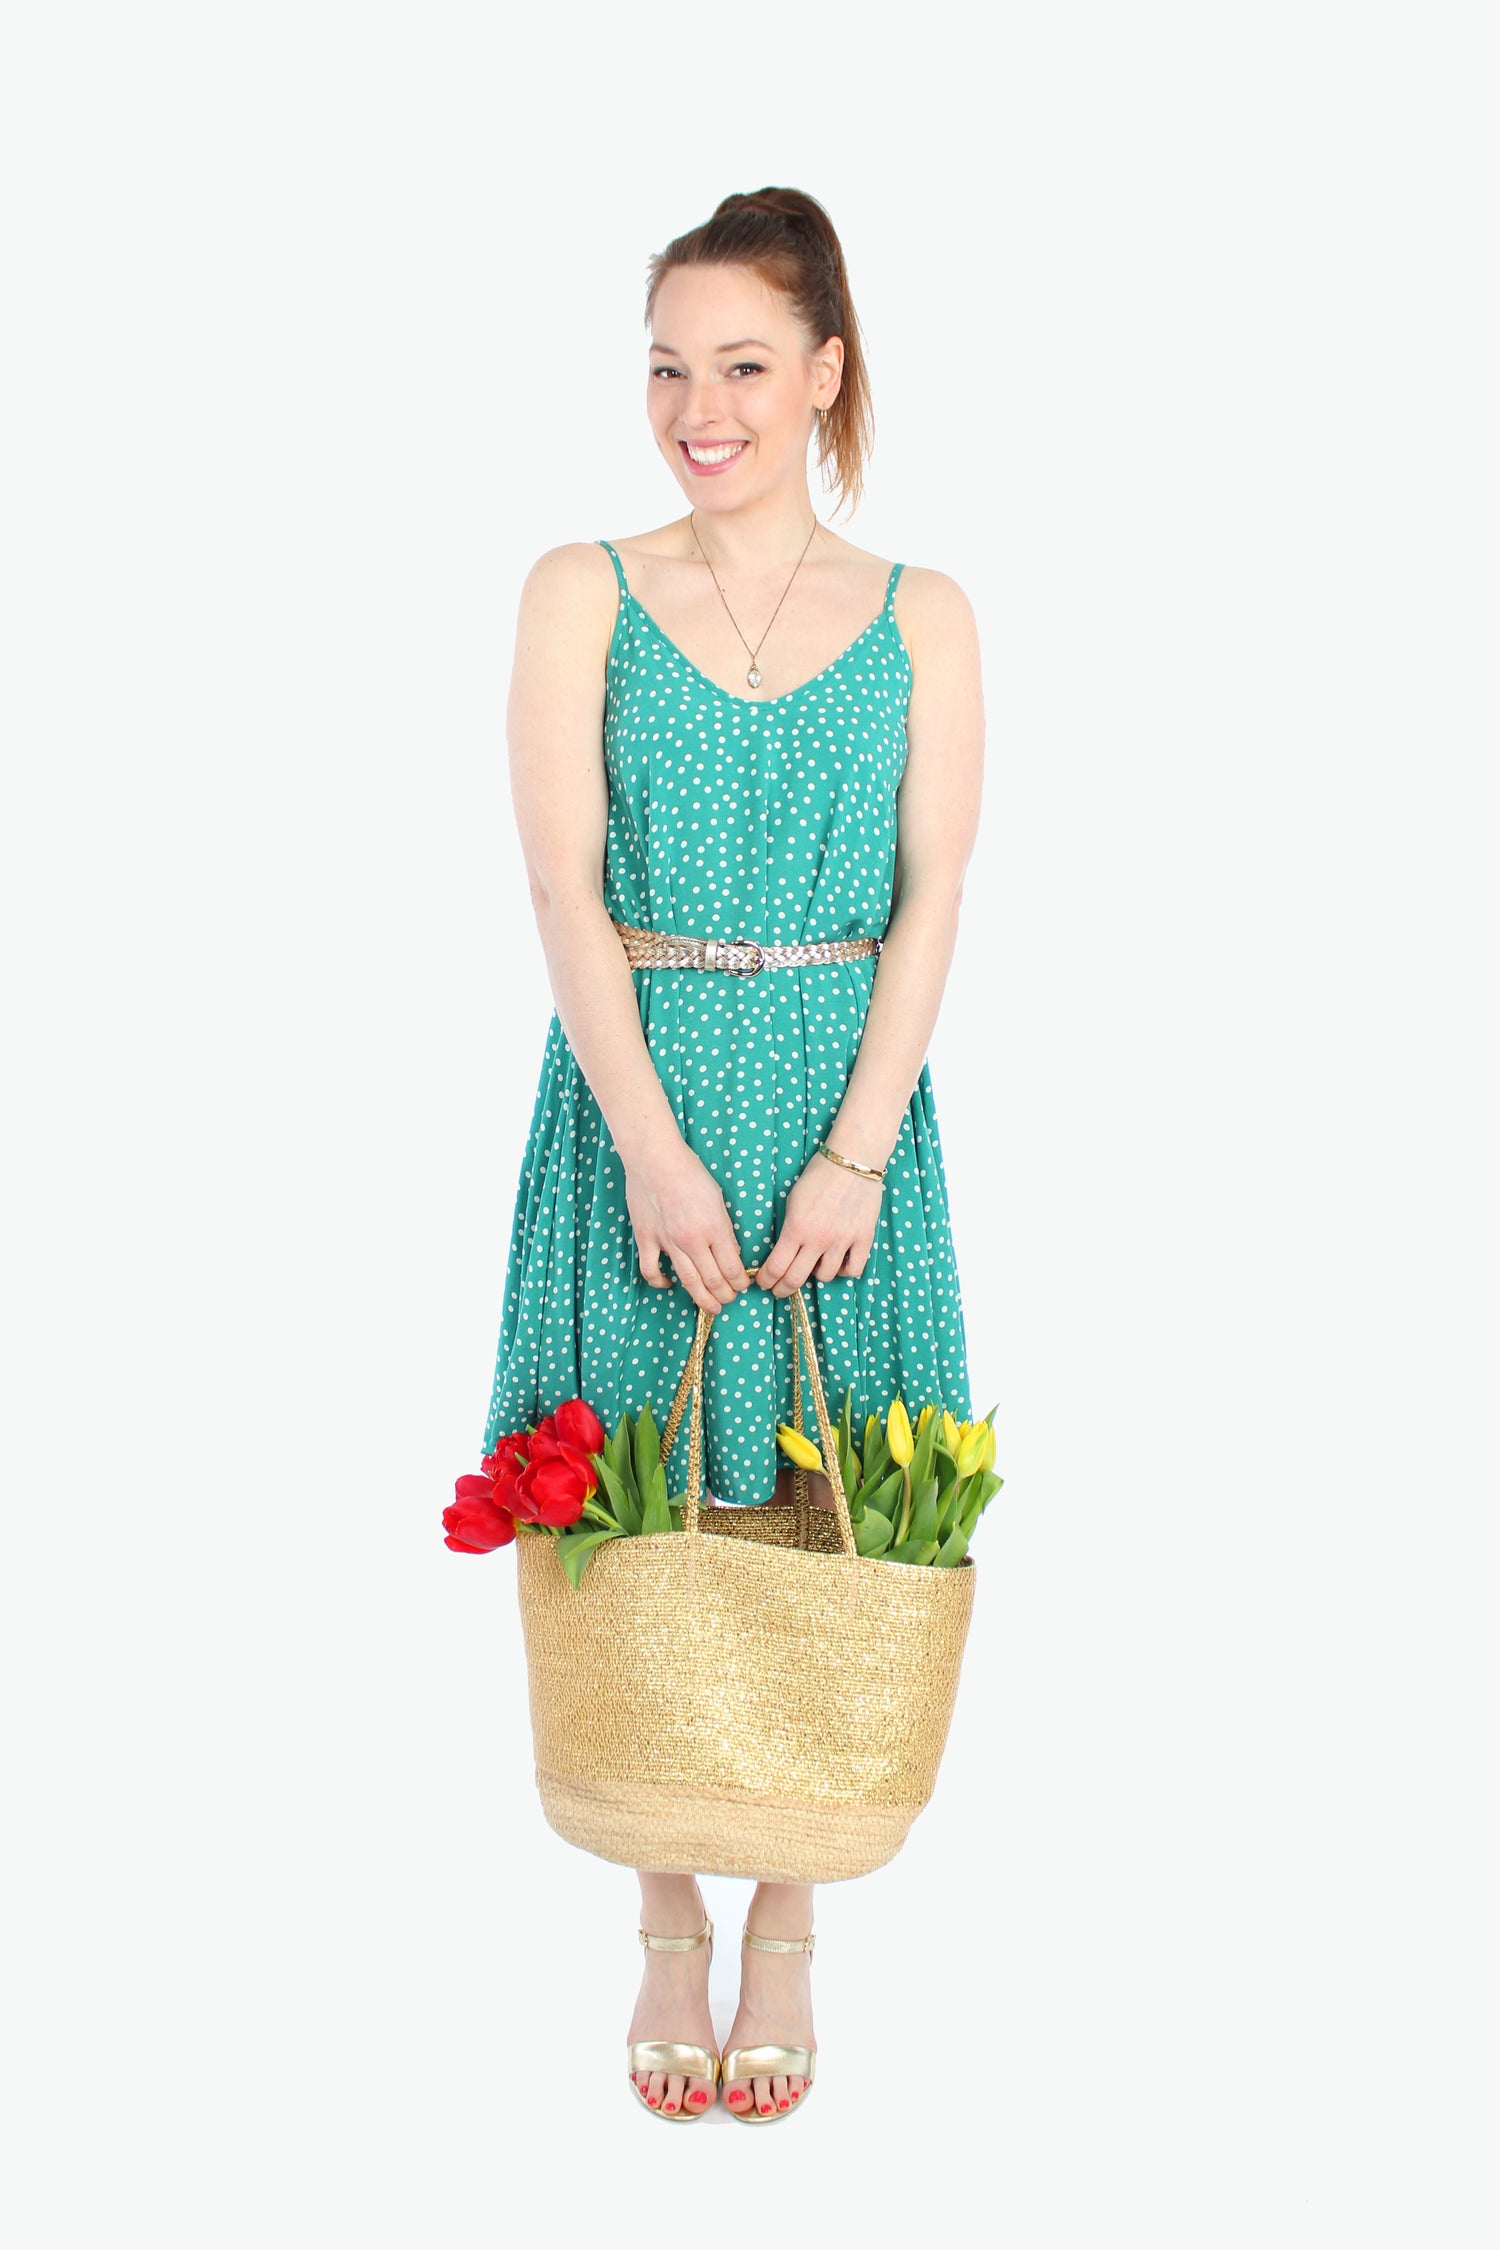 Frau, in einem sommerlichen Minikleid mit schmalen Trägern in grün mit weißen Pünktchen aus leichtem Viskosestoff von LA.LUKA Berlin, trägt eine Korbtasche mit Tulpen in den Händen.